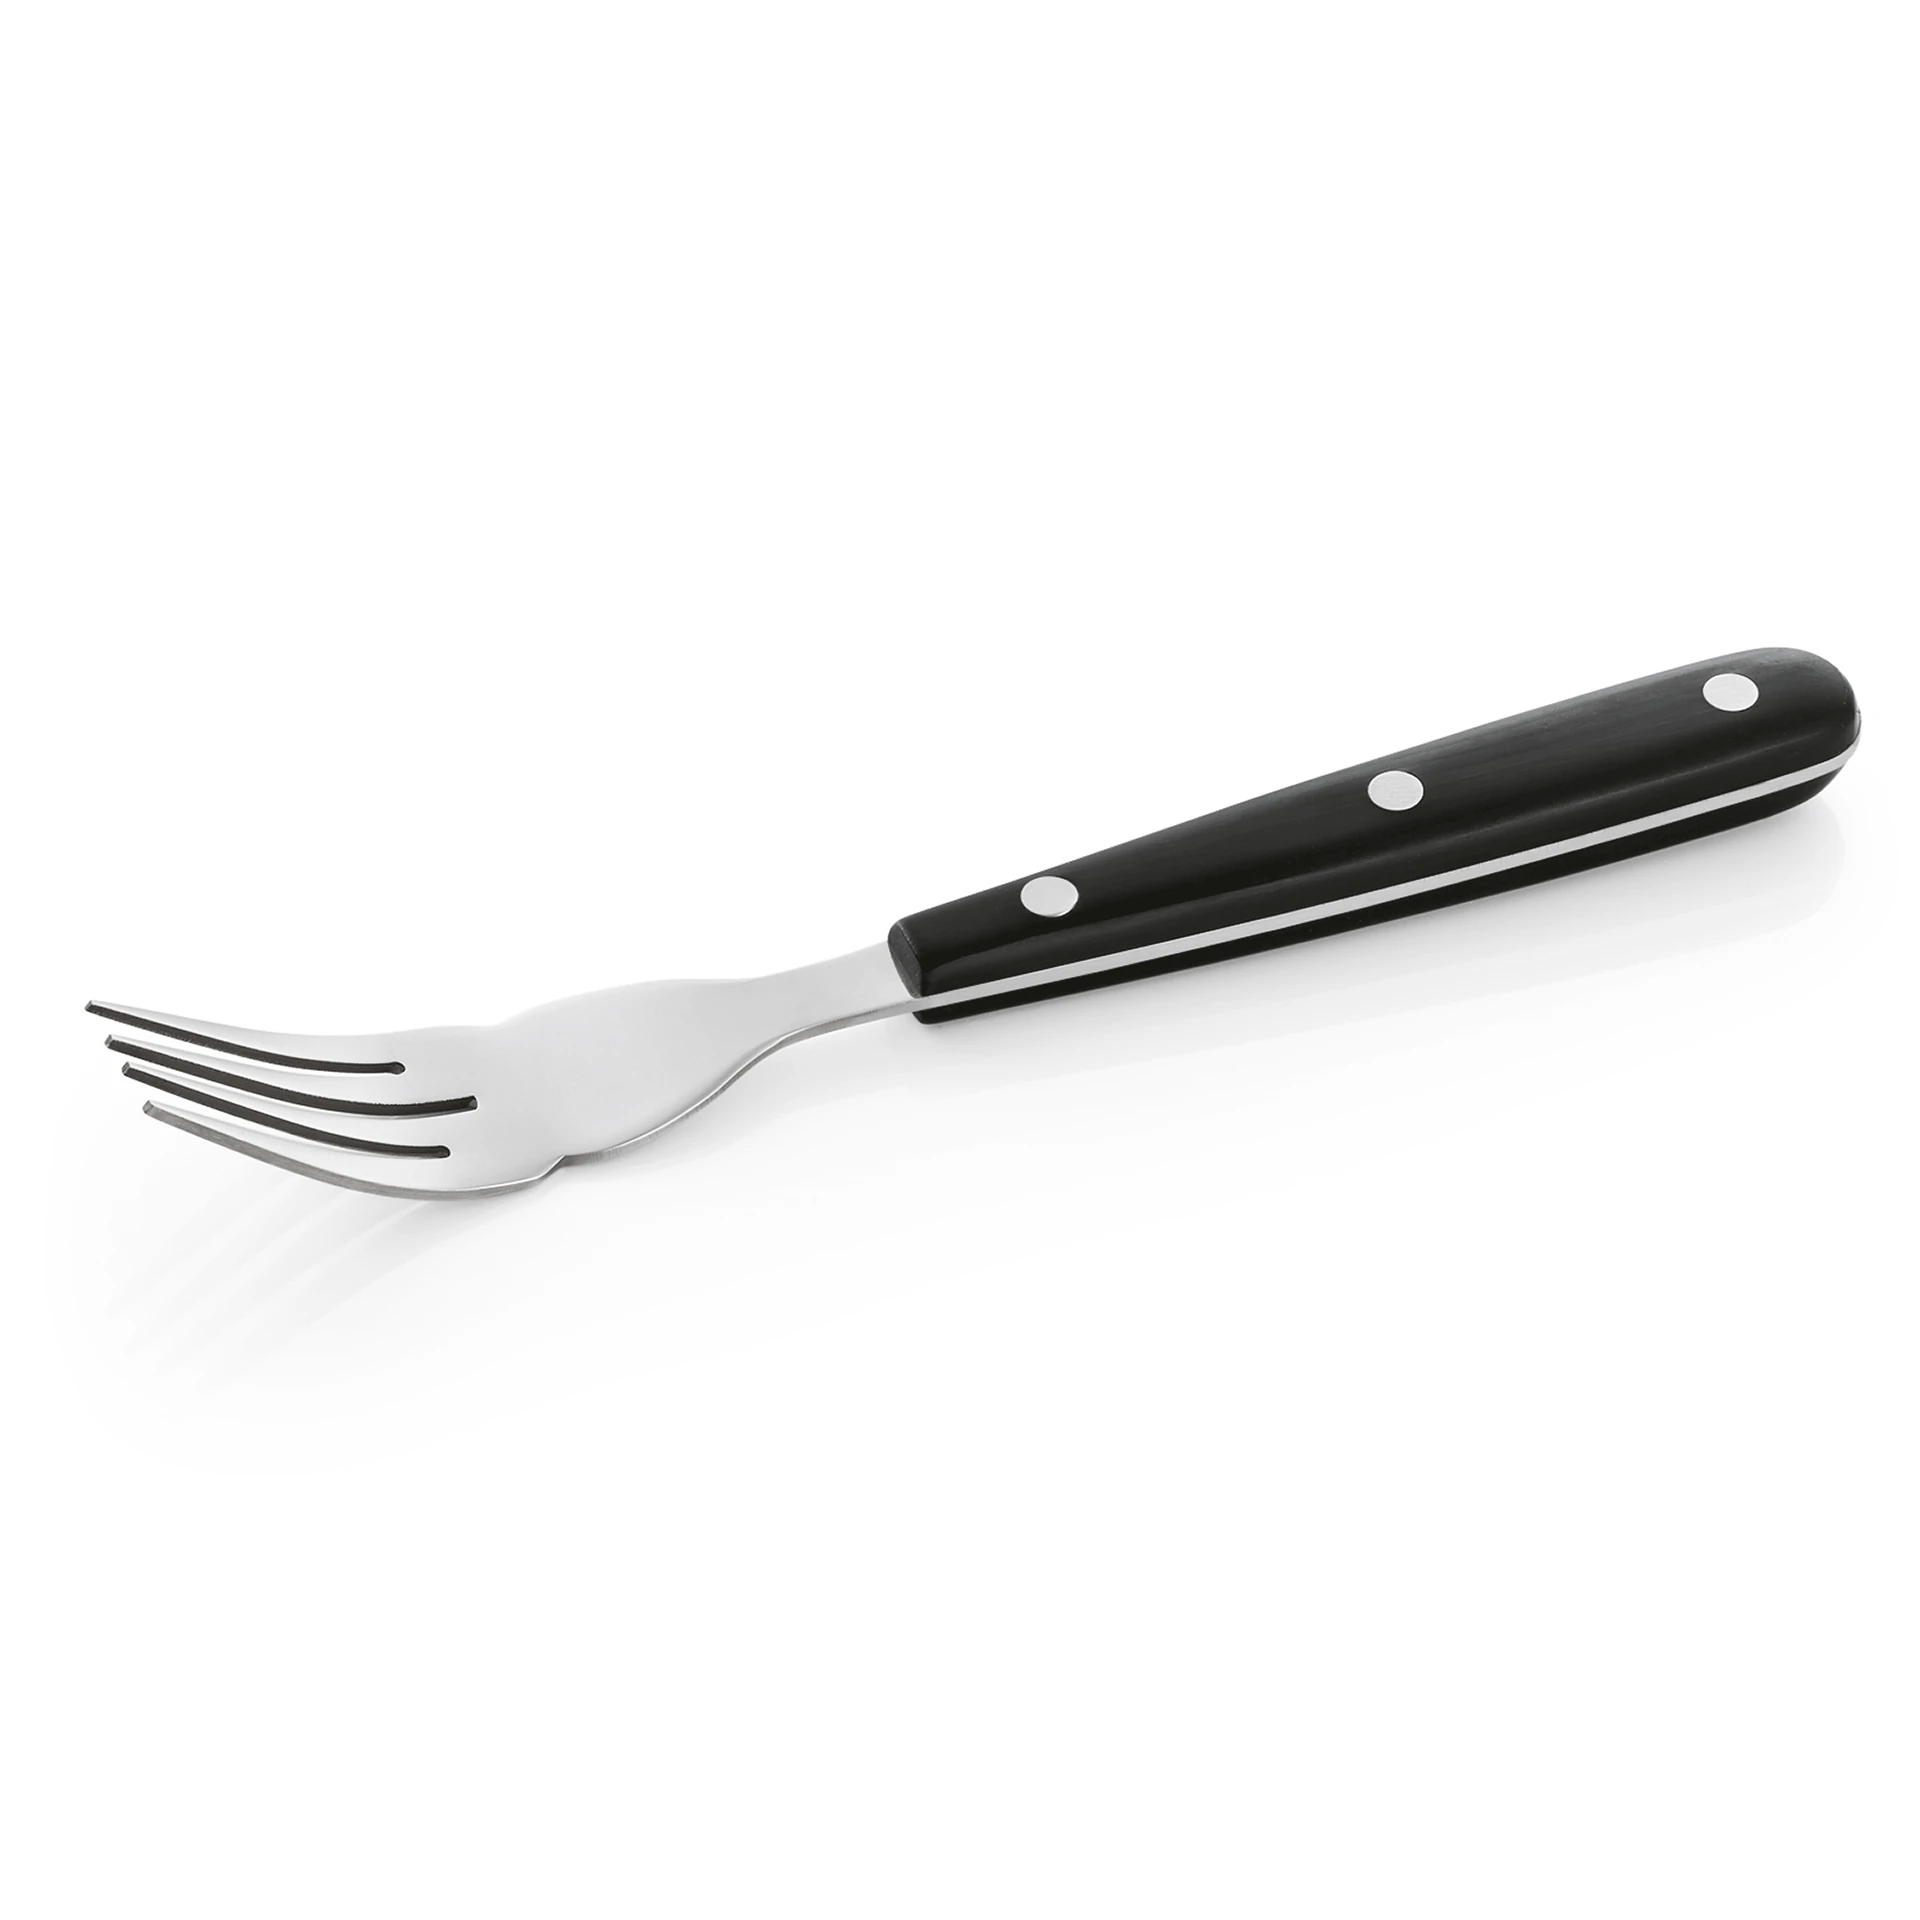 Steak/pizza cutlery knife